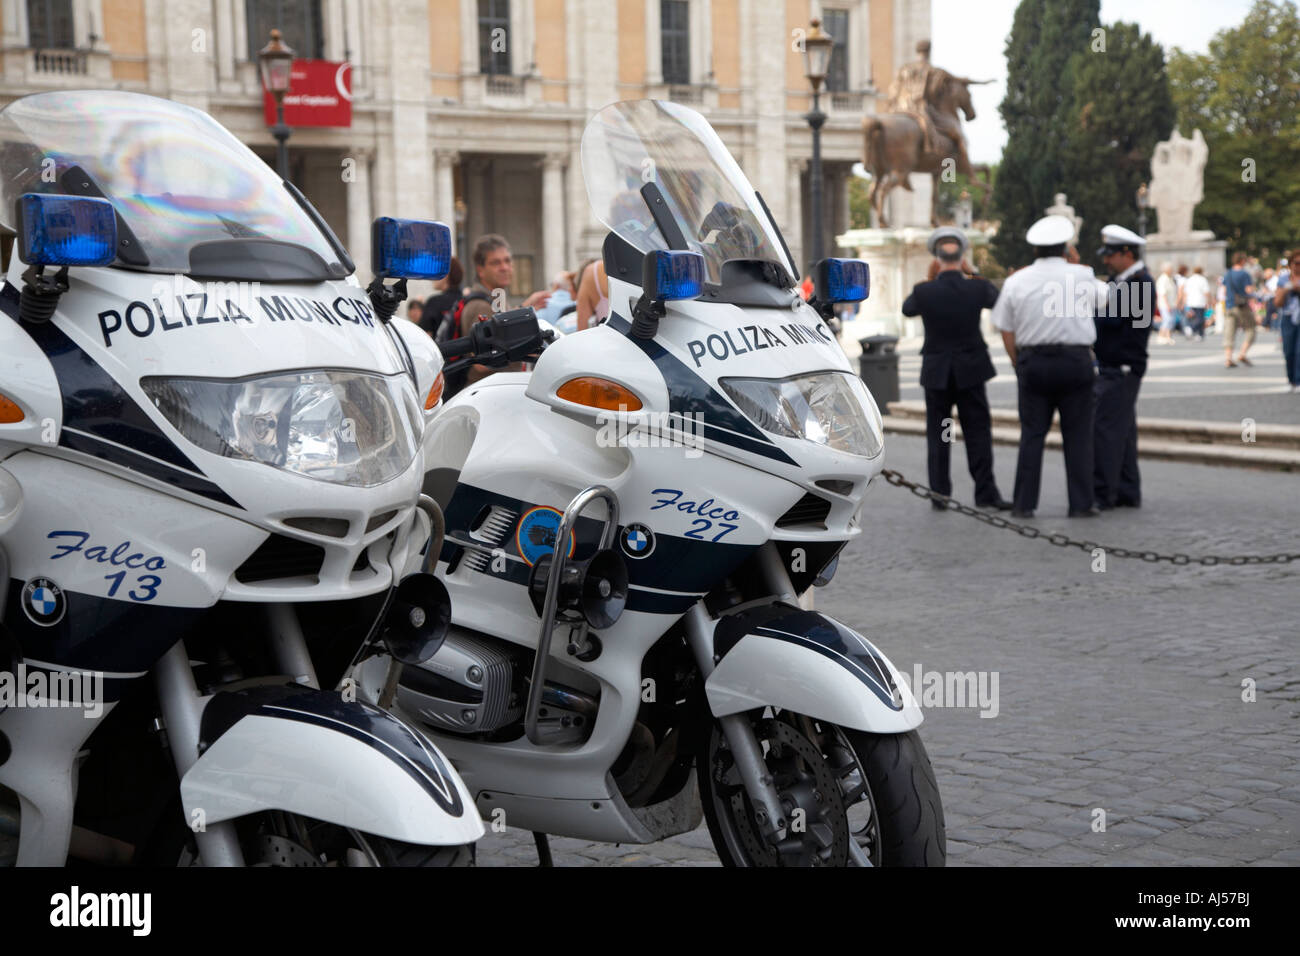 Stand de la police municipale de parler dans l'arrière-plan derrière deux motos de police dans le Campidoglio Rome Lazio Italie Banque D'Images